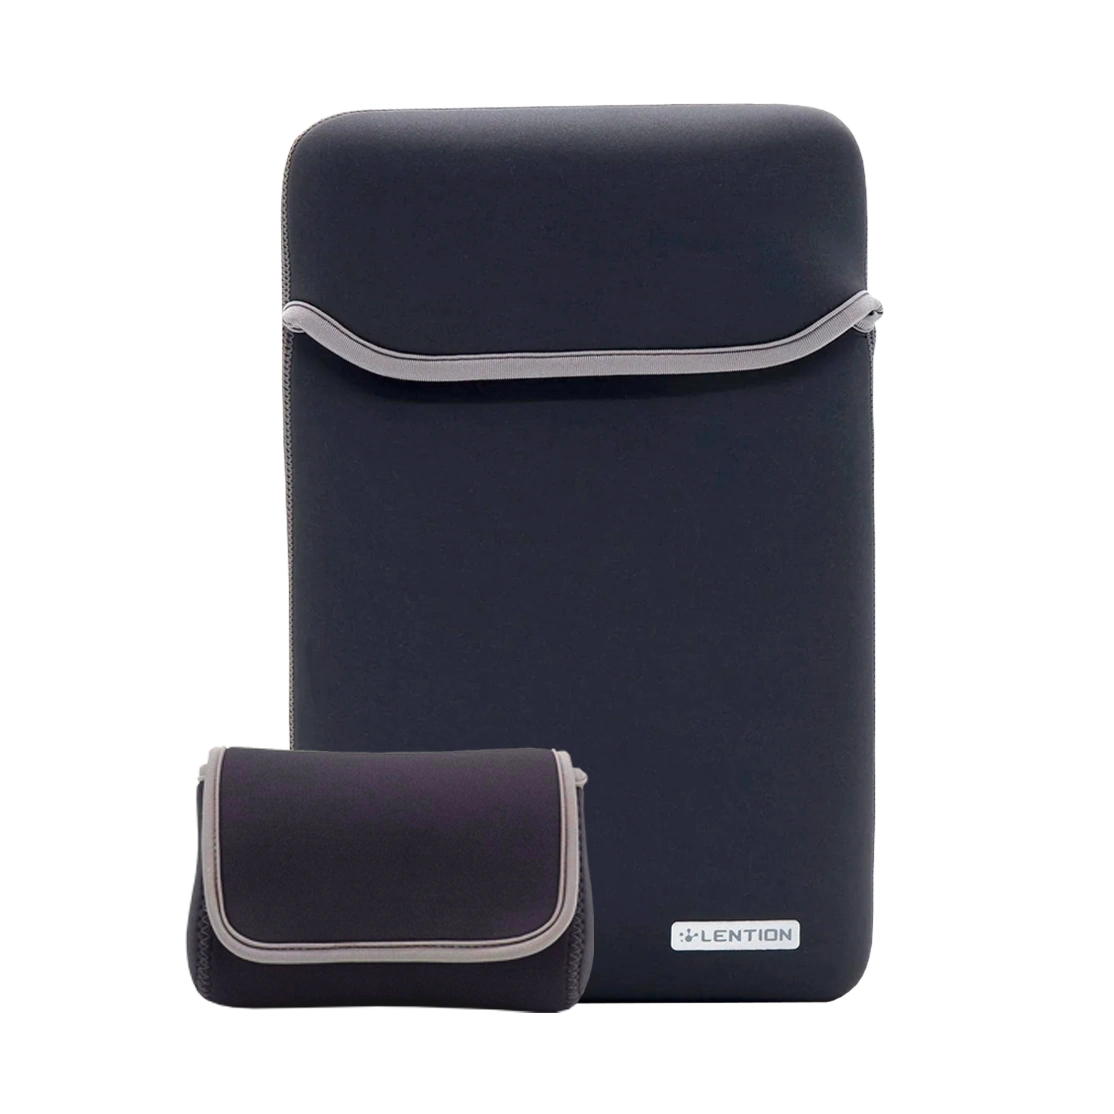 Lention Neoprene Sleeve Case for Macbook 12-inch PCB-B310